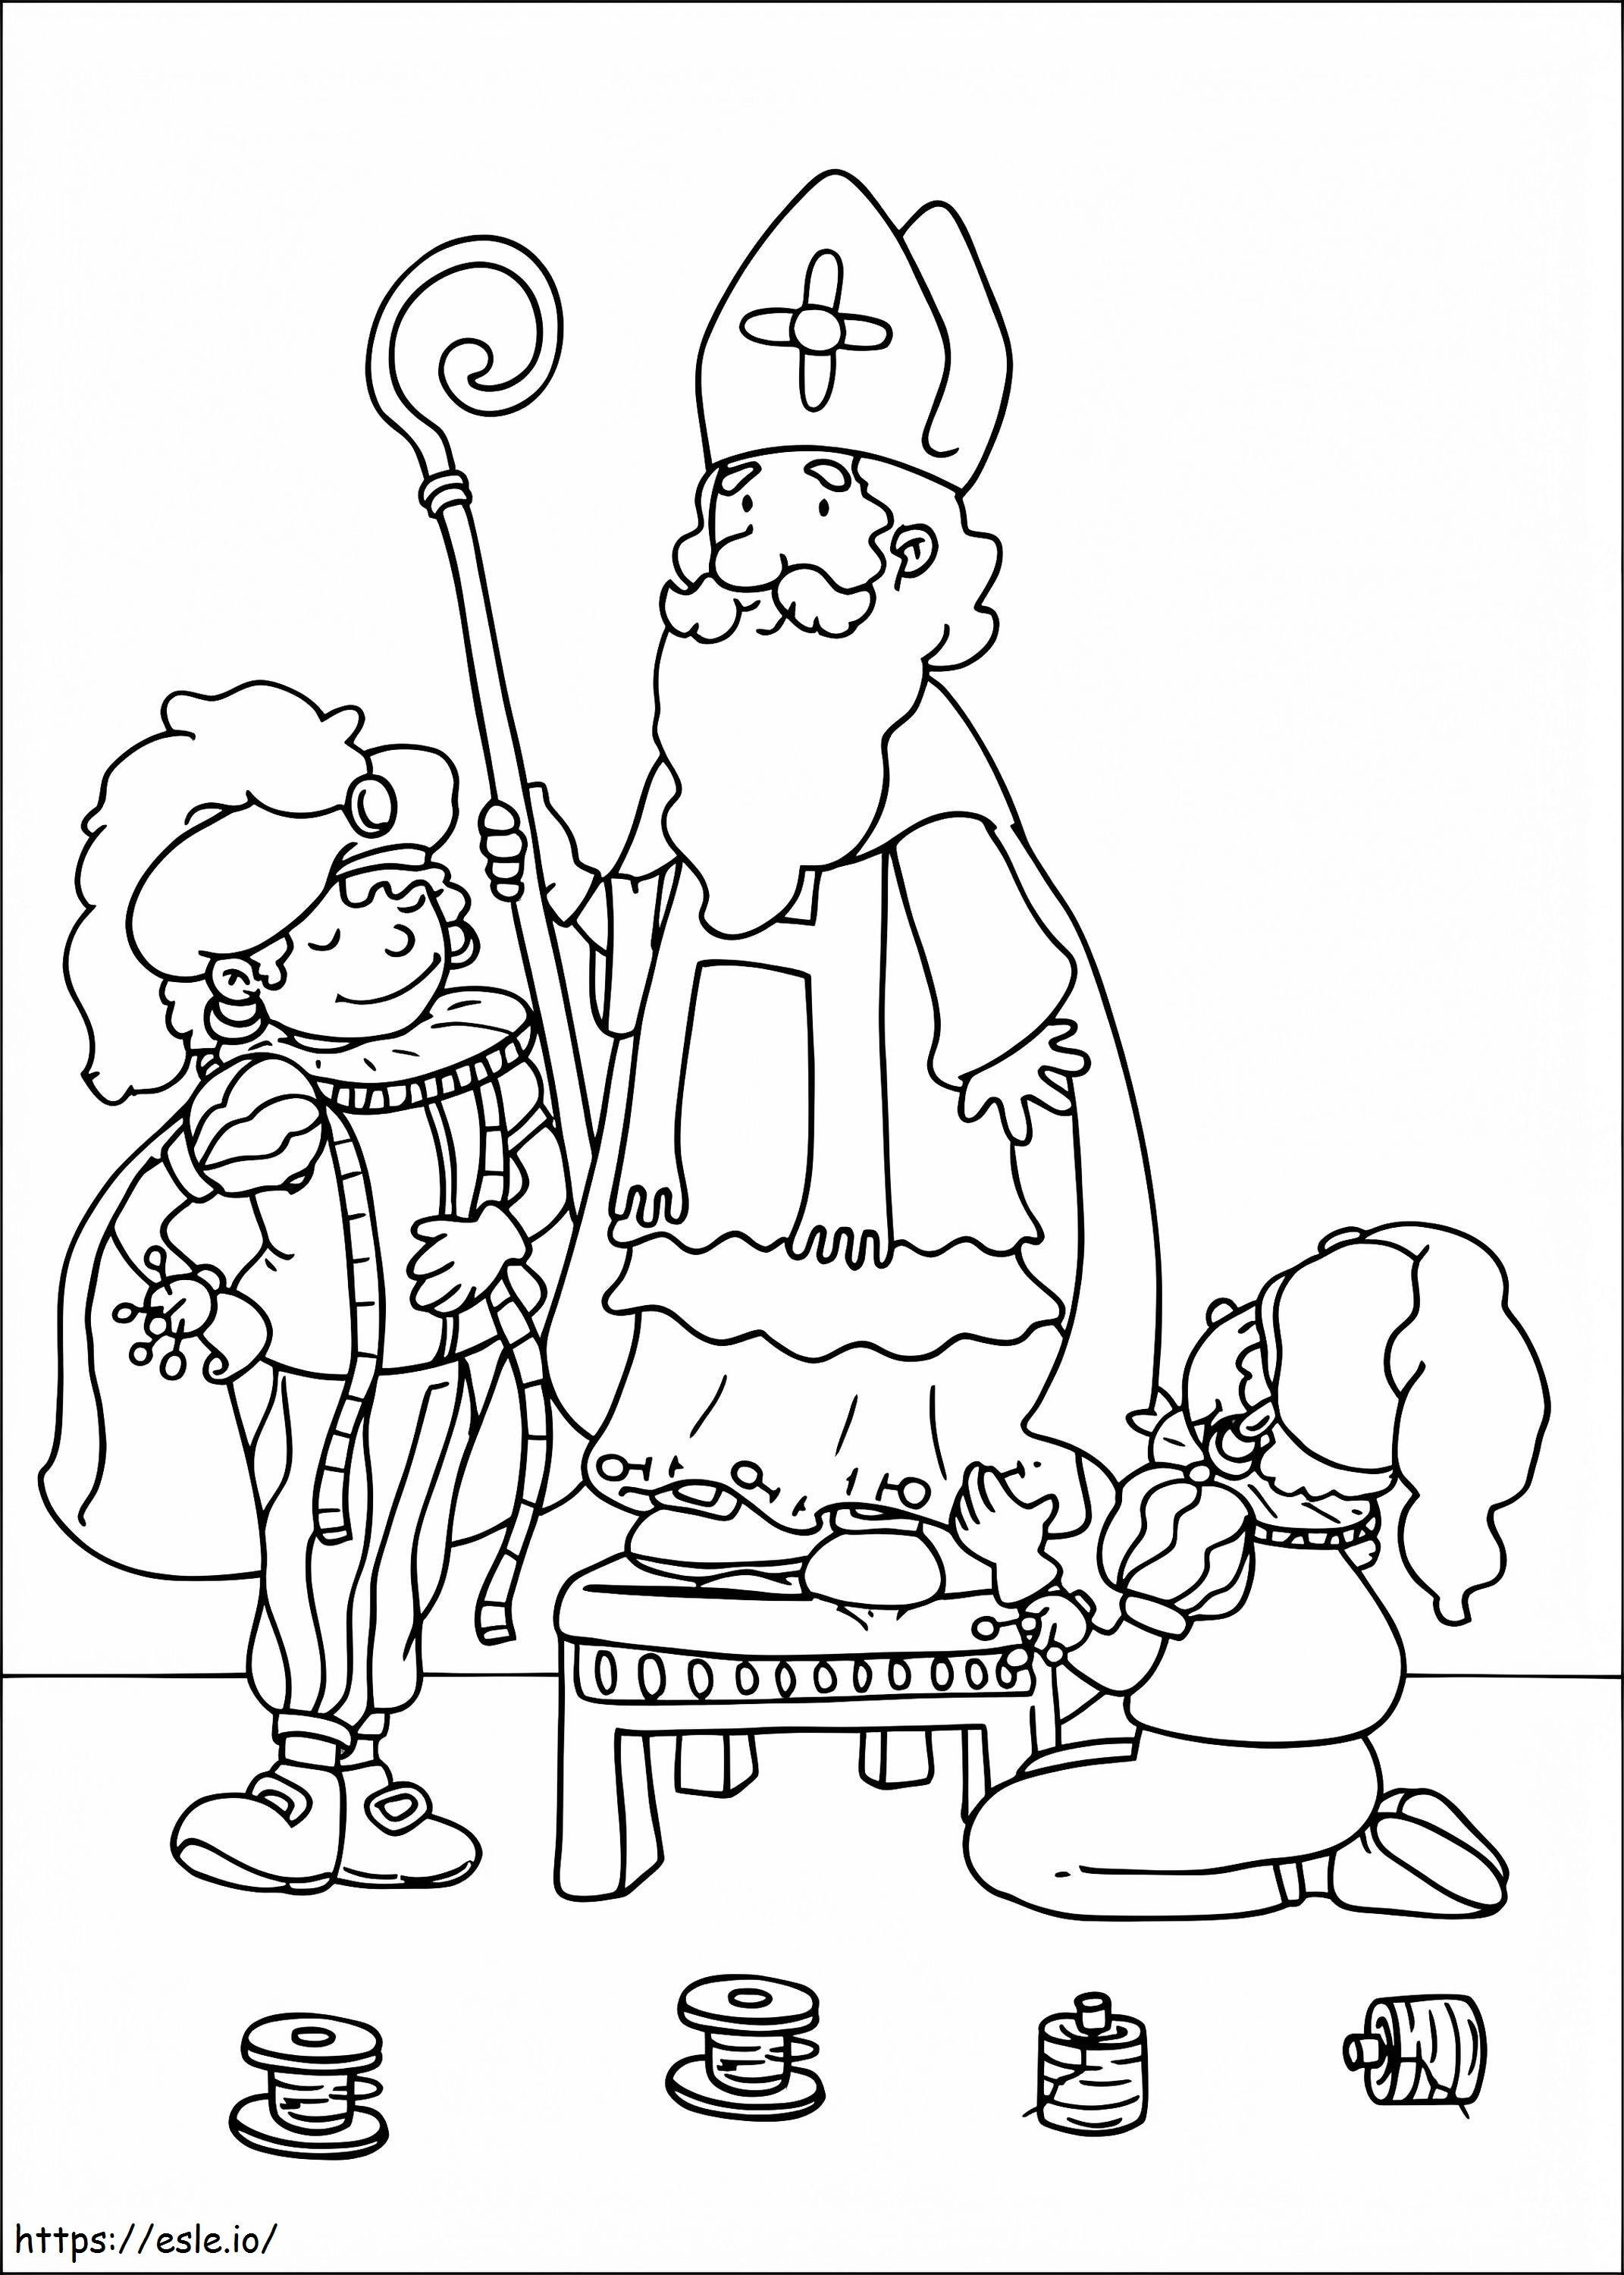 Saint Nicholas 4 coloring page